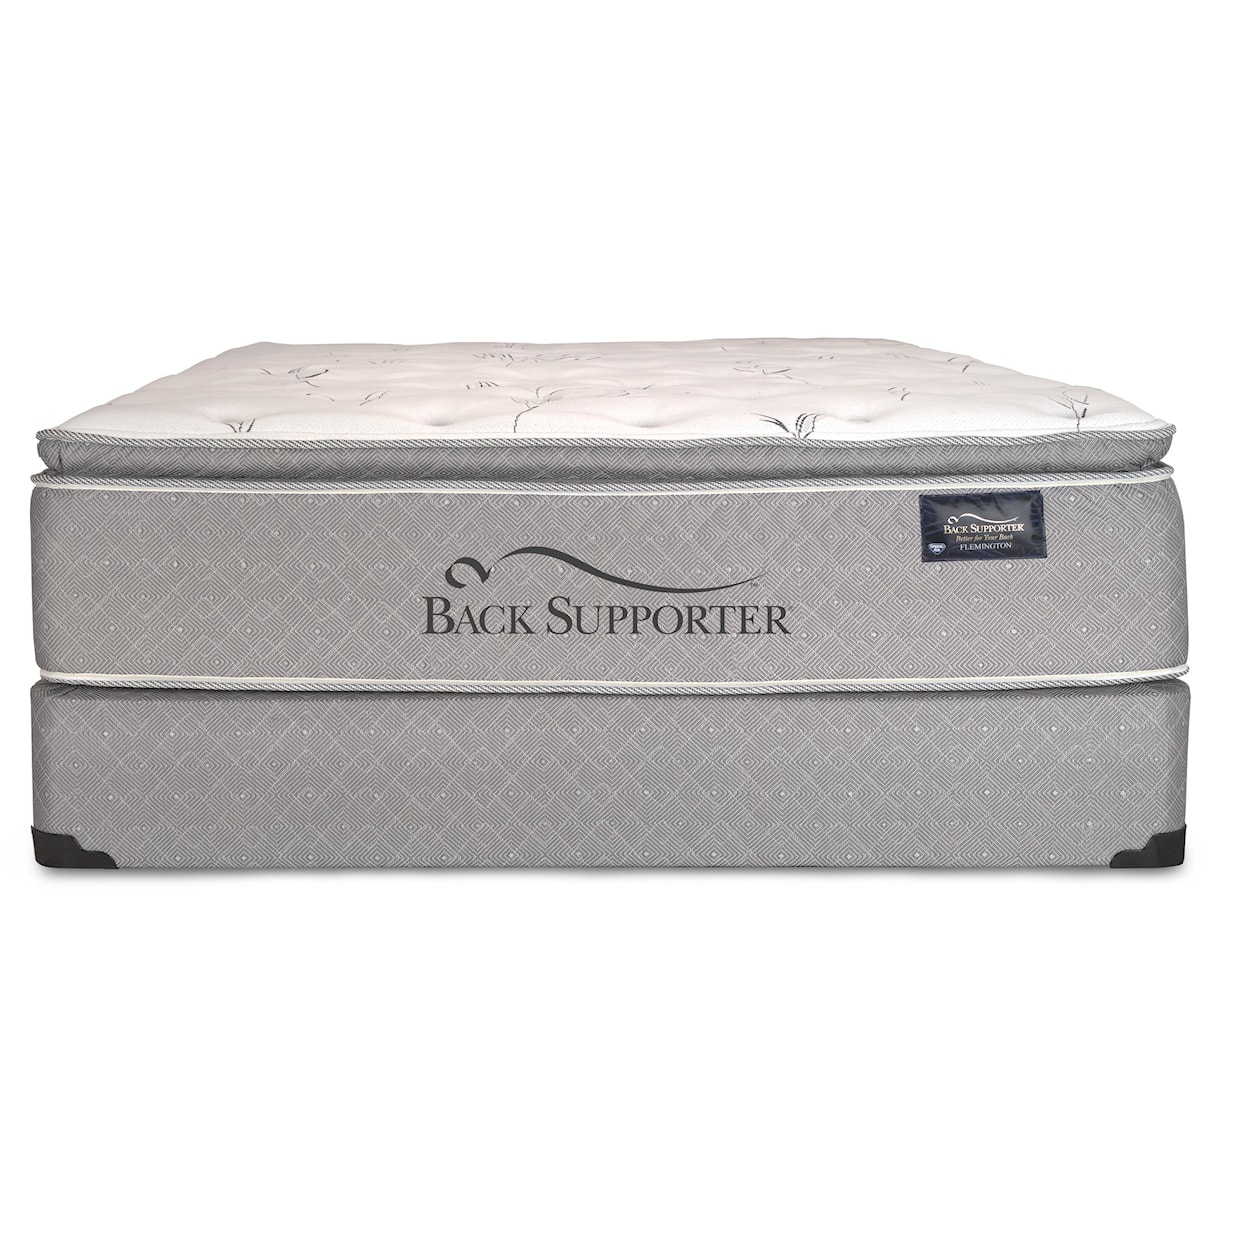 Spring Air Back Supporter Luxuriance King Super Pillow Top Mattress Set